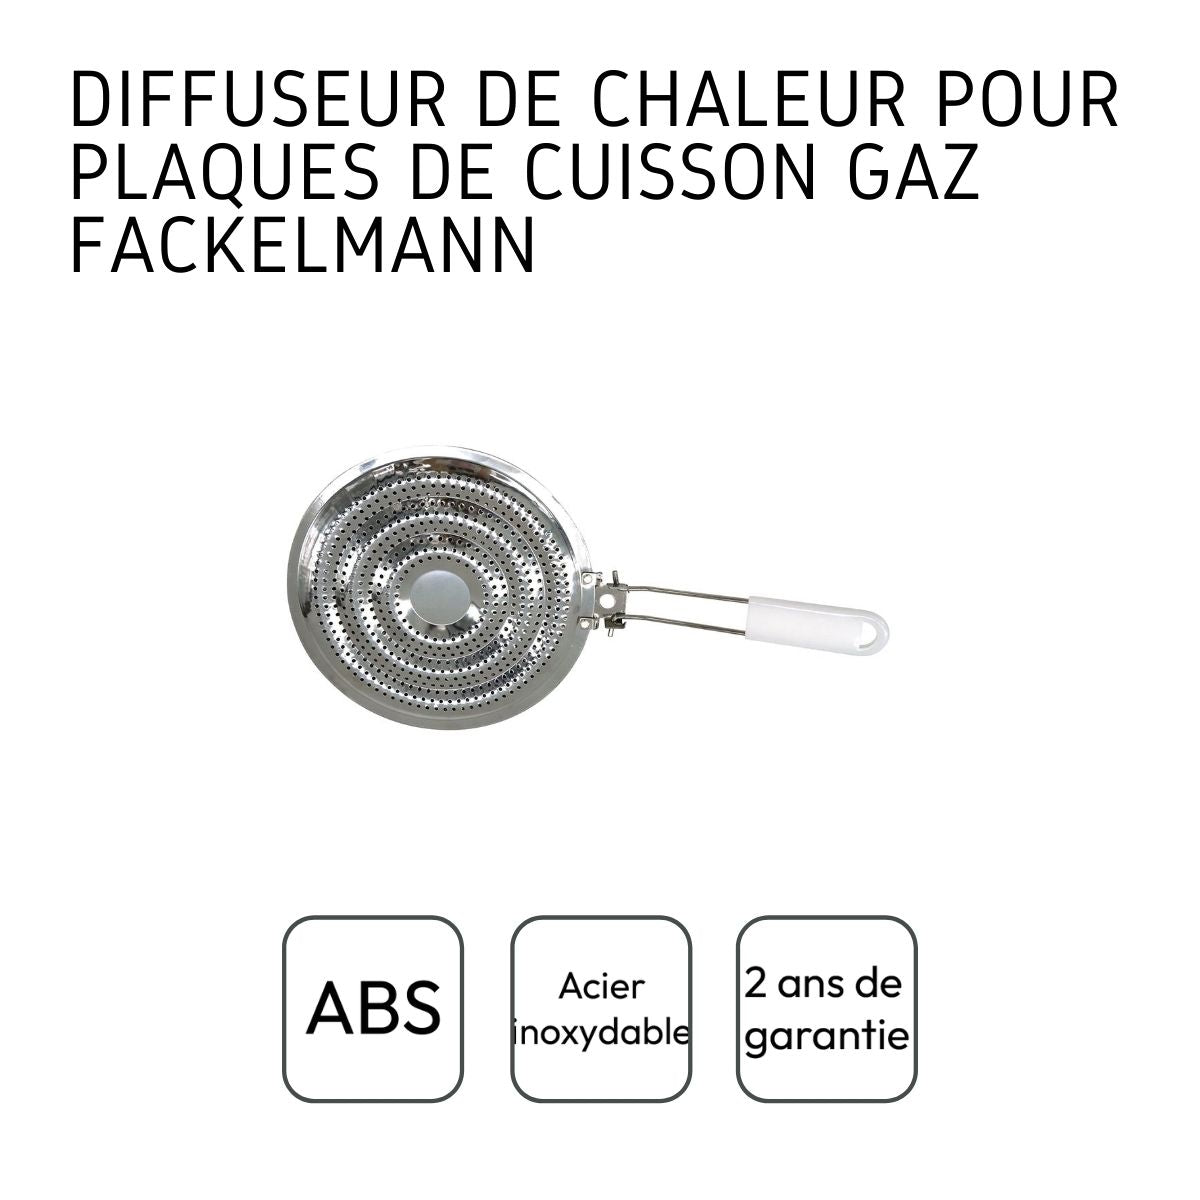 Diffuseur de chaleur pour plaque de cuisson gaz Fackelmann